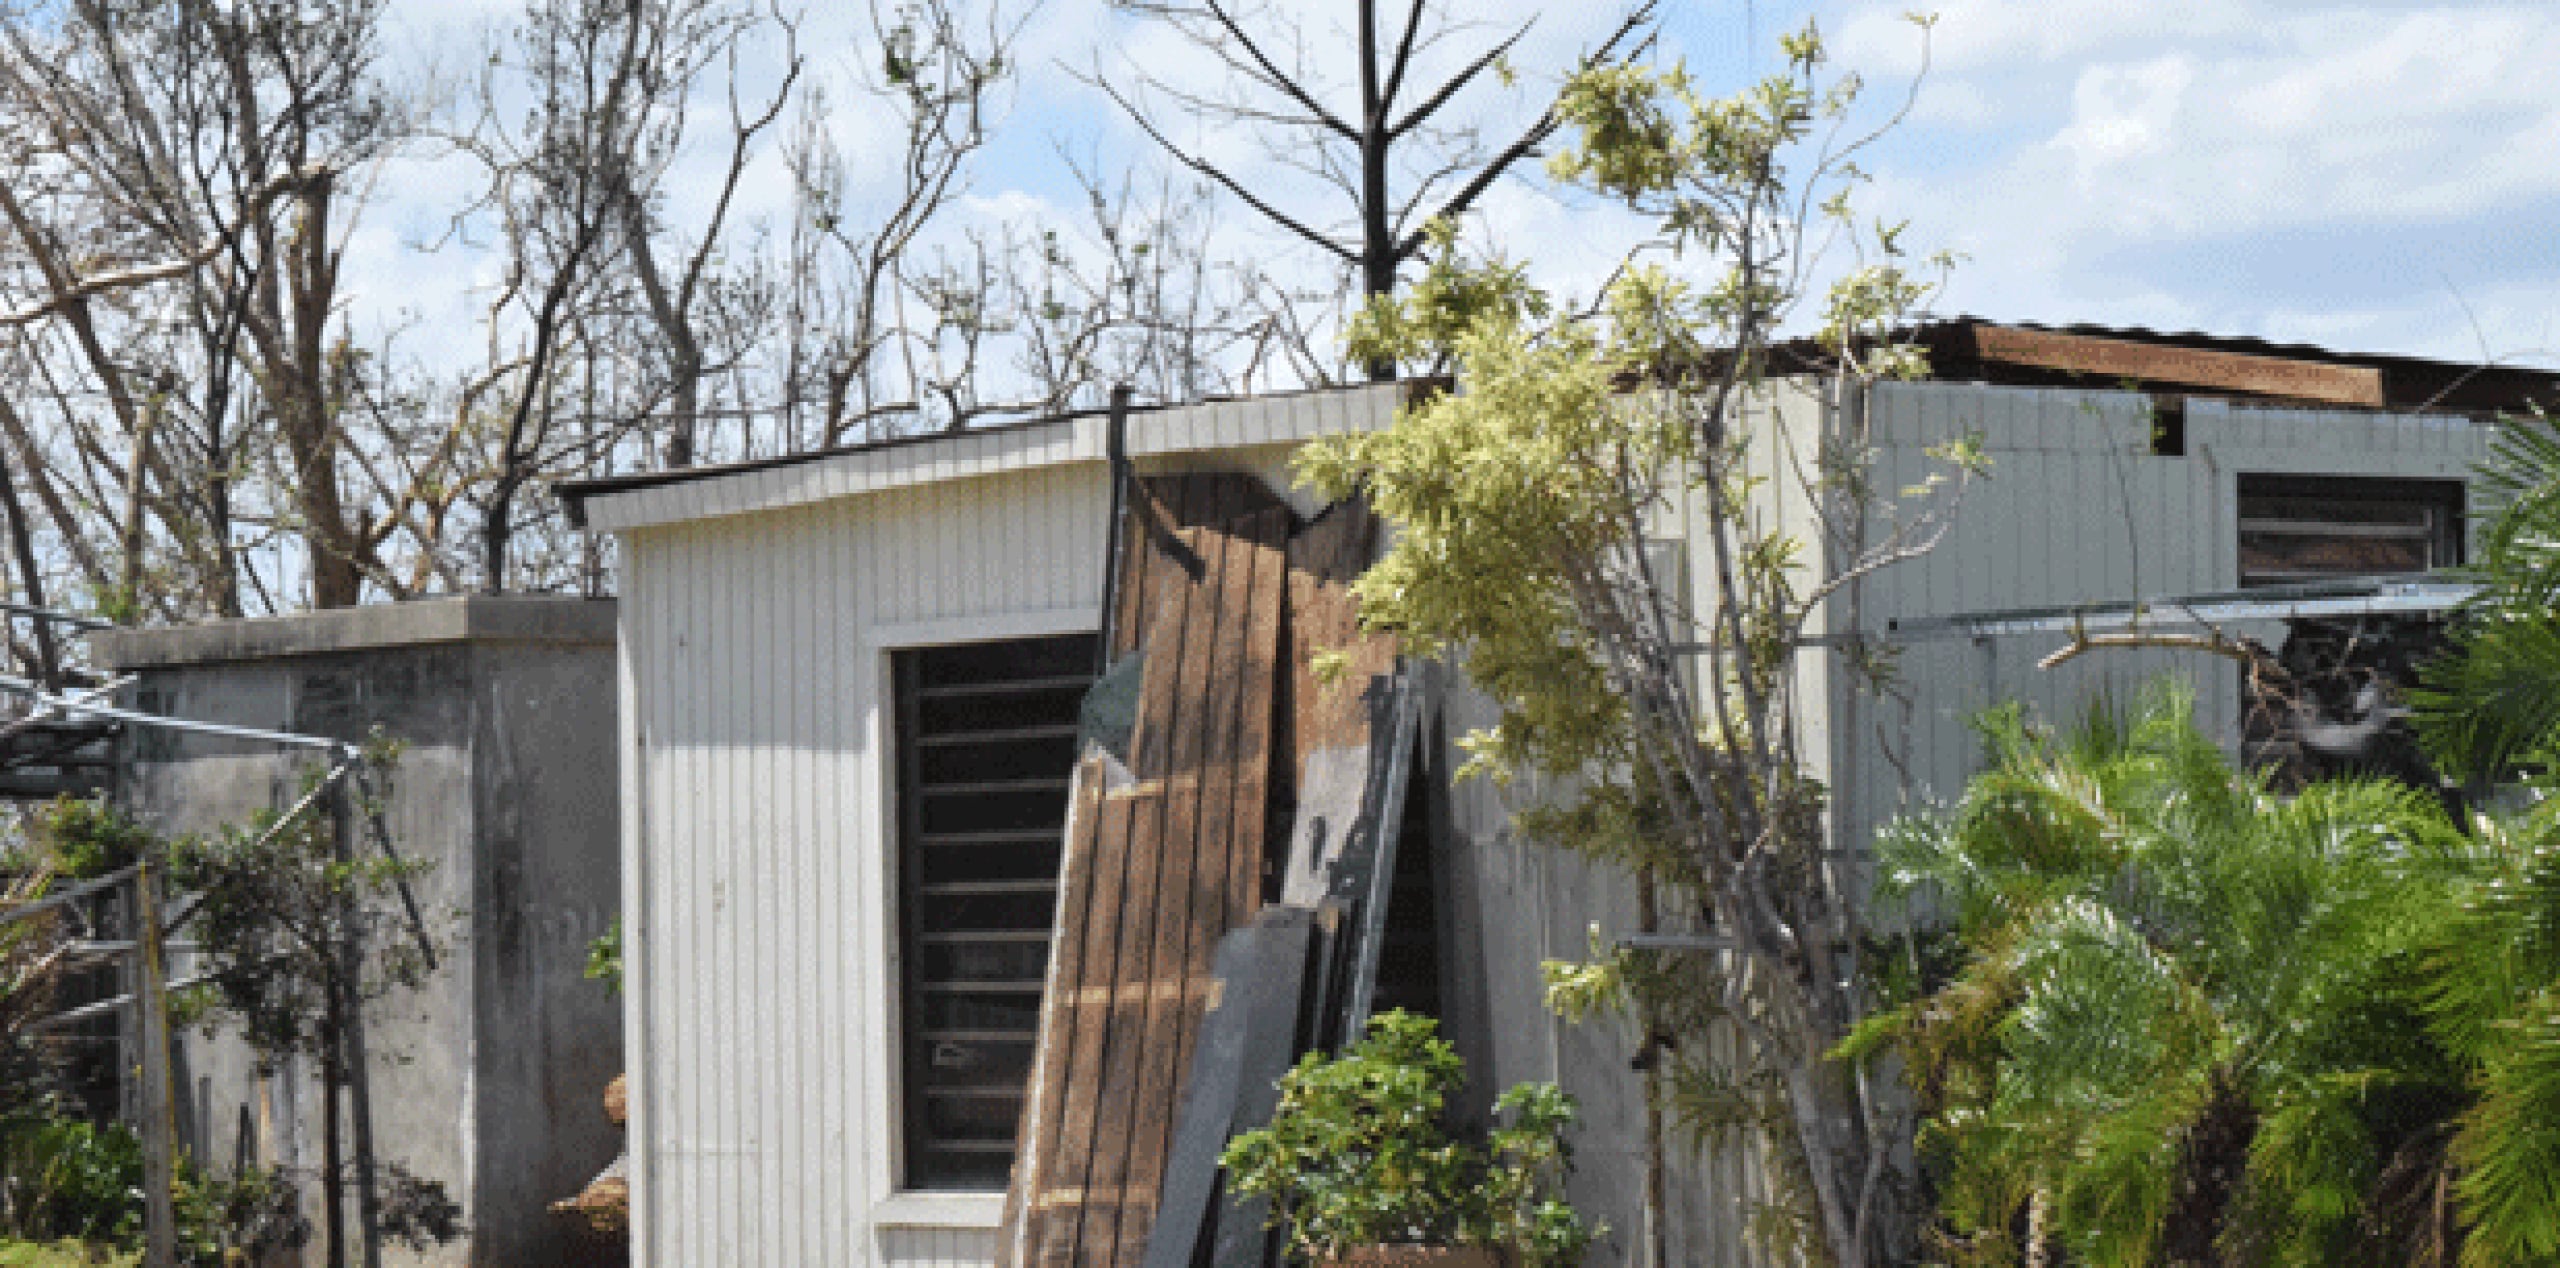 La casa de Pedro López quedó destruida tras el embate del huracán María. (Para Primera Hora / José Karlo Pagán)